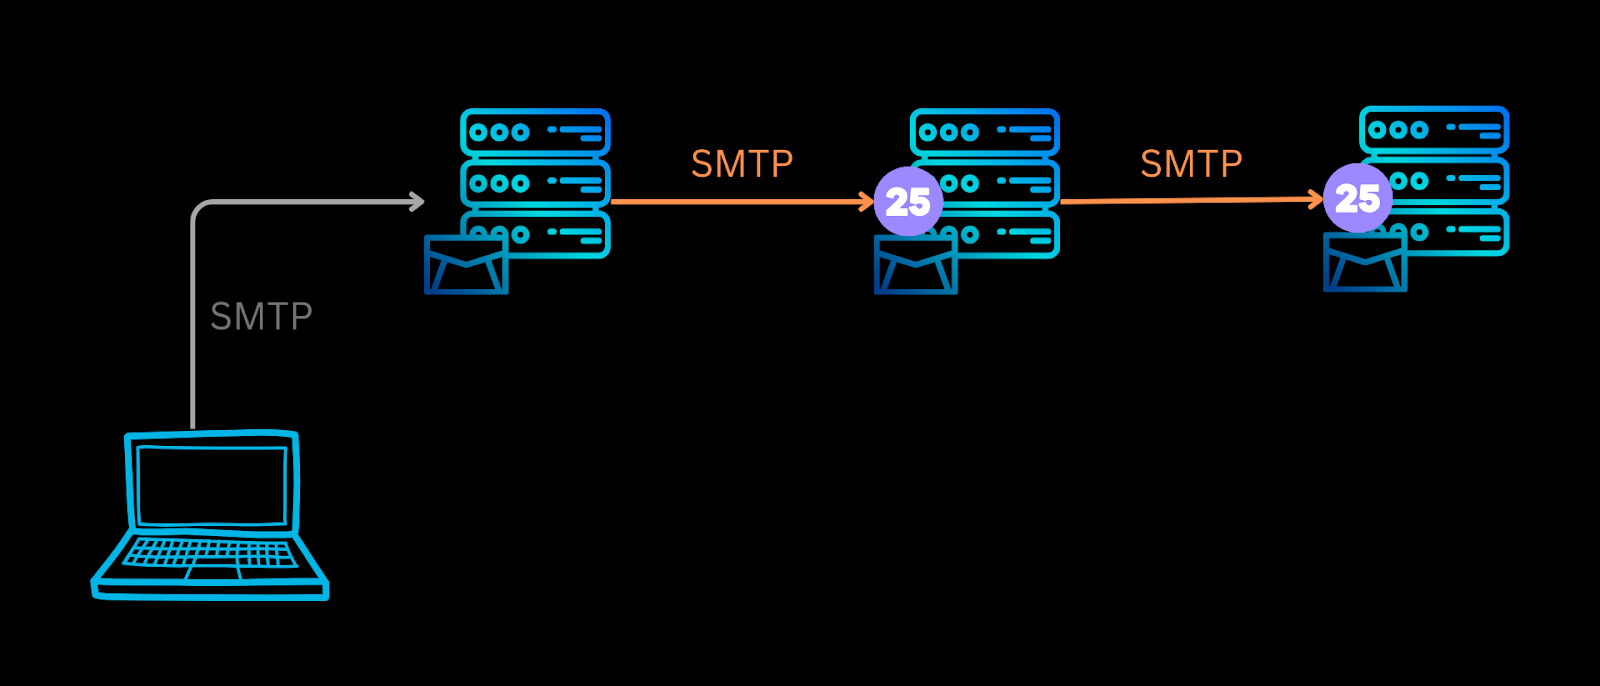 SMTP port 25